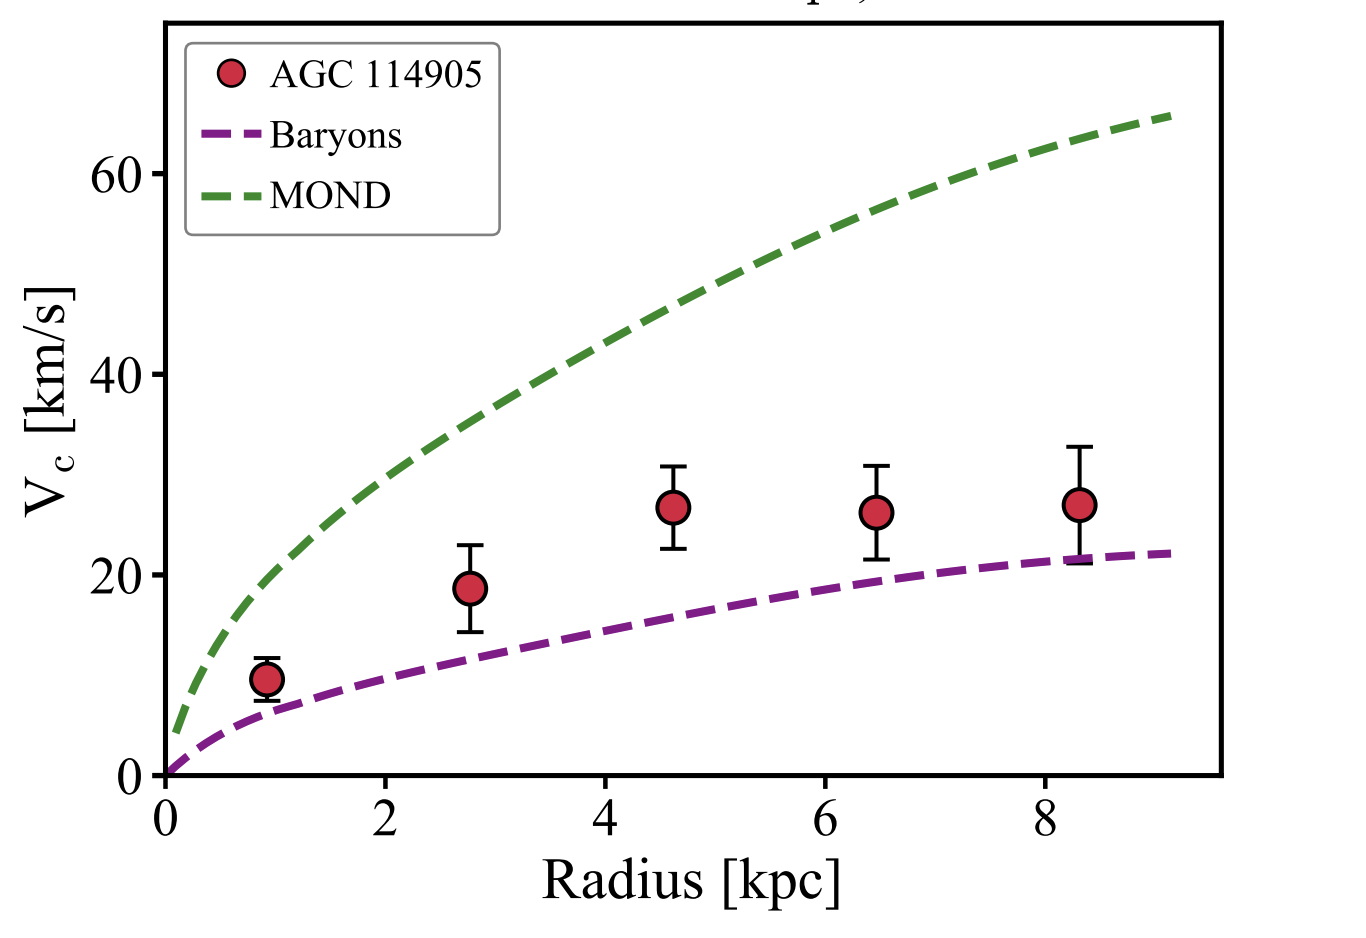 График зависимости скорости вращения материи в галактике AGC 114905 от расстояния до ее центра. Красные кружки обозначают данные наблюдений, фиолетовая линия - скорость материи, определяемая наблюдаемой барионной материей в стандартной теории гравитации, а зеленая линия - предсказание MOND. Предоставлено: PEM Piña et al. / arXiv.org, 2021 г.